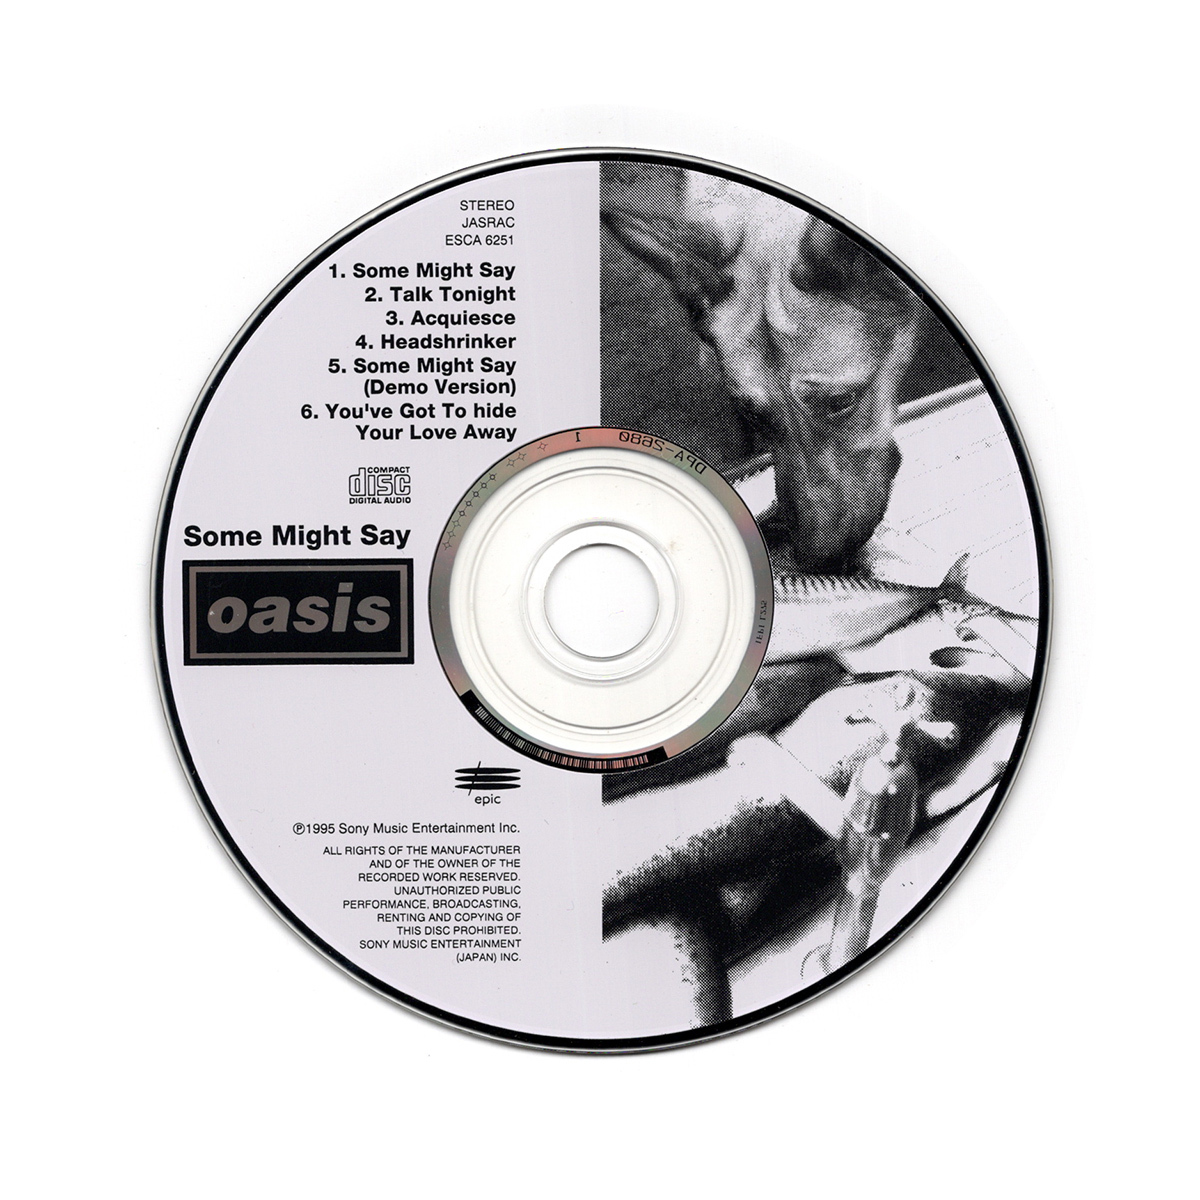 ビートルズのカバー 日本盤ボーナストラック収録《CD》 Oasis オアシス / Some Might Say 国内正規盤 [ESCA 6251]_画像9